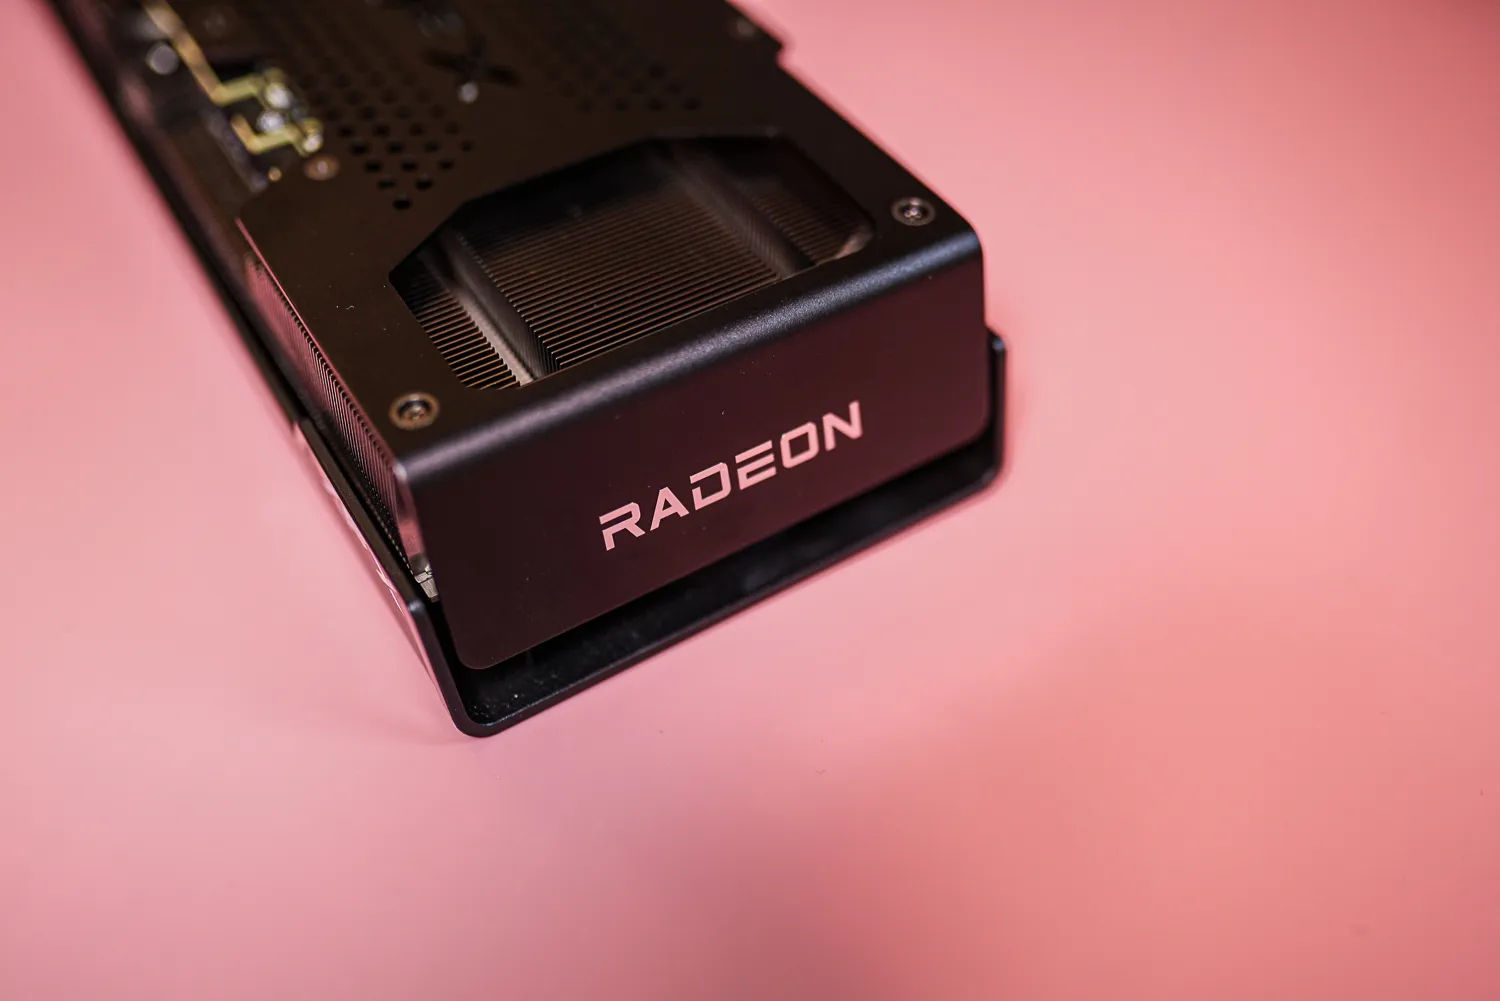 RX 7600 XT显卡上的Radeon标志。